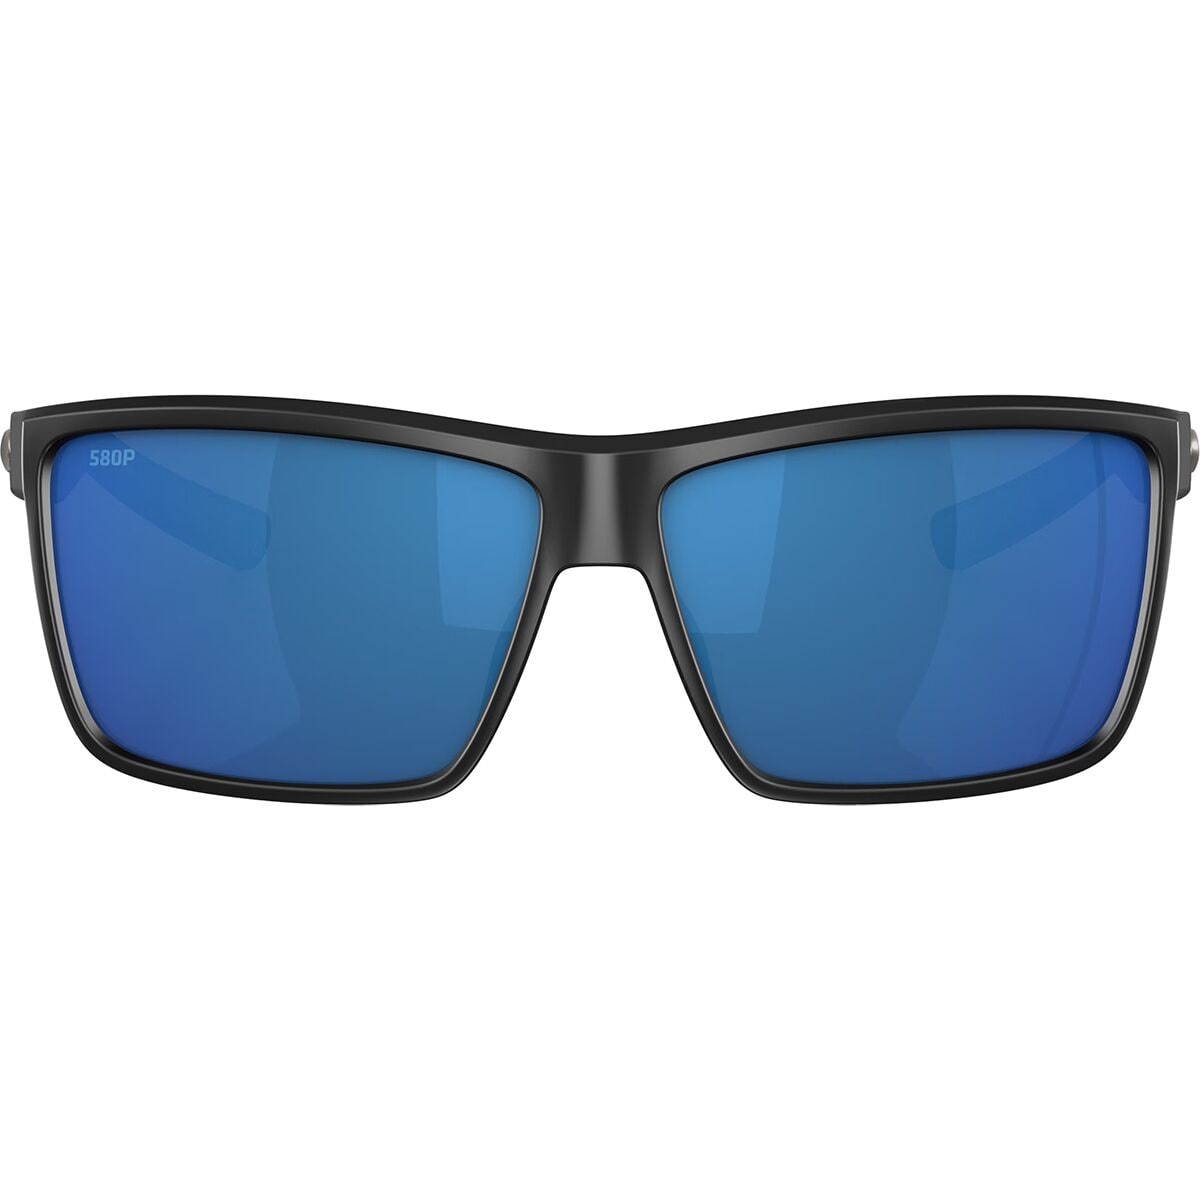 Costa Rinconcito 580P Polarized Sunglasses - Men